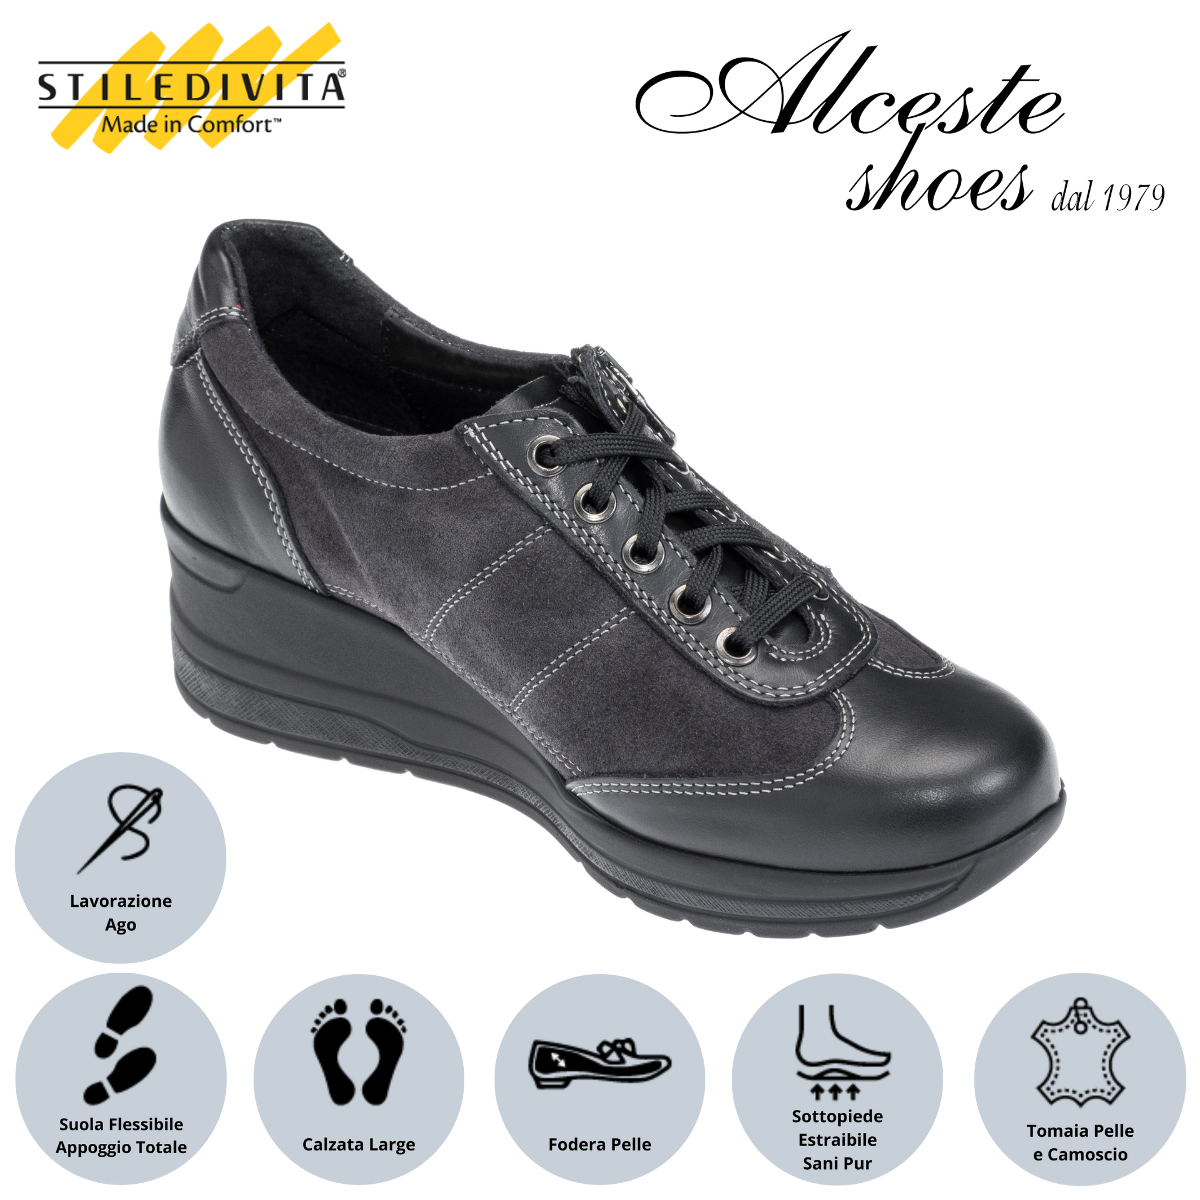 Sneakers Donna con Lacci e Cerniera "Stiledivita" Art. 9042 in Pelle Nero e Camoscio Antracite Alceste Shoes 25